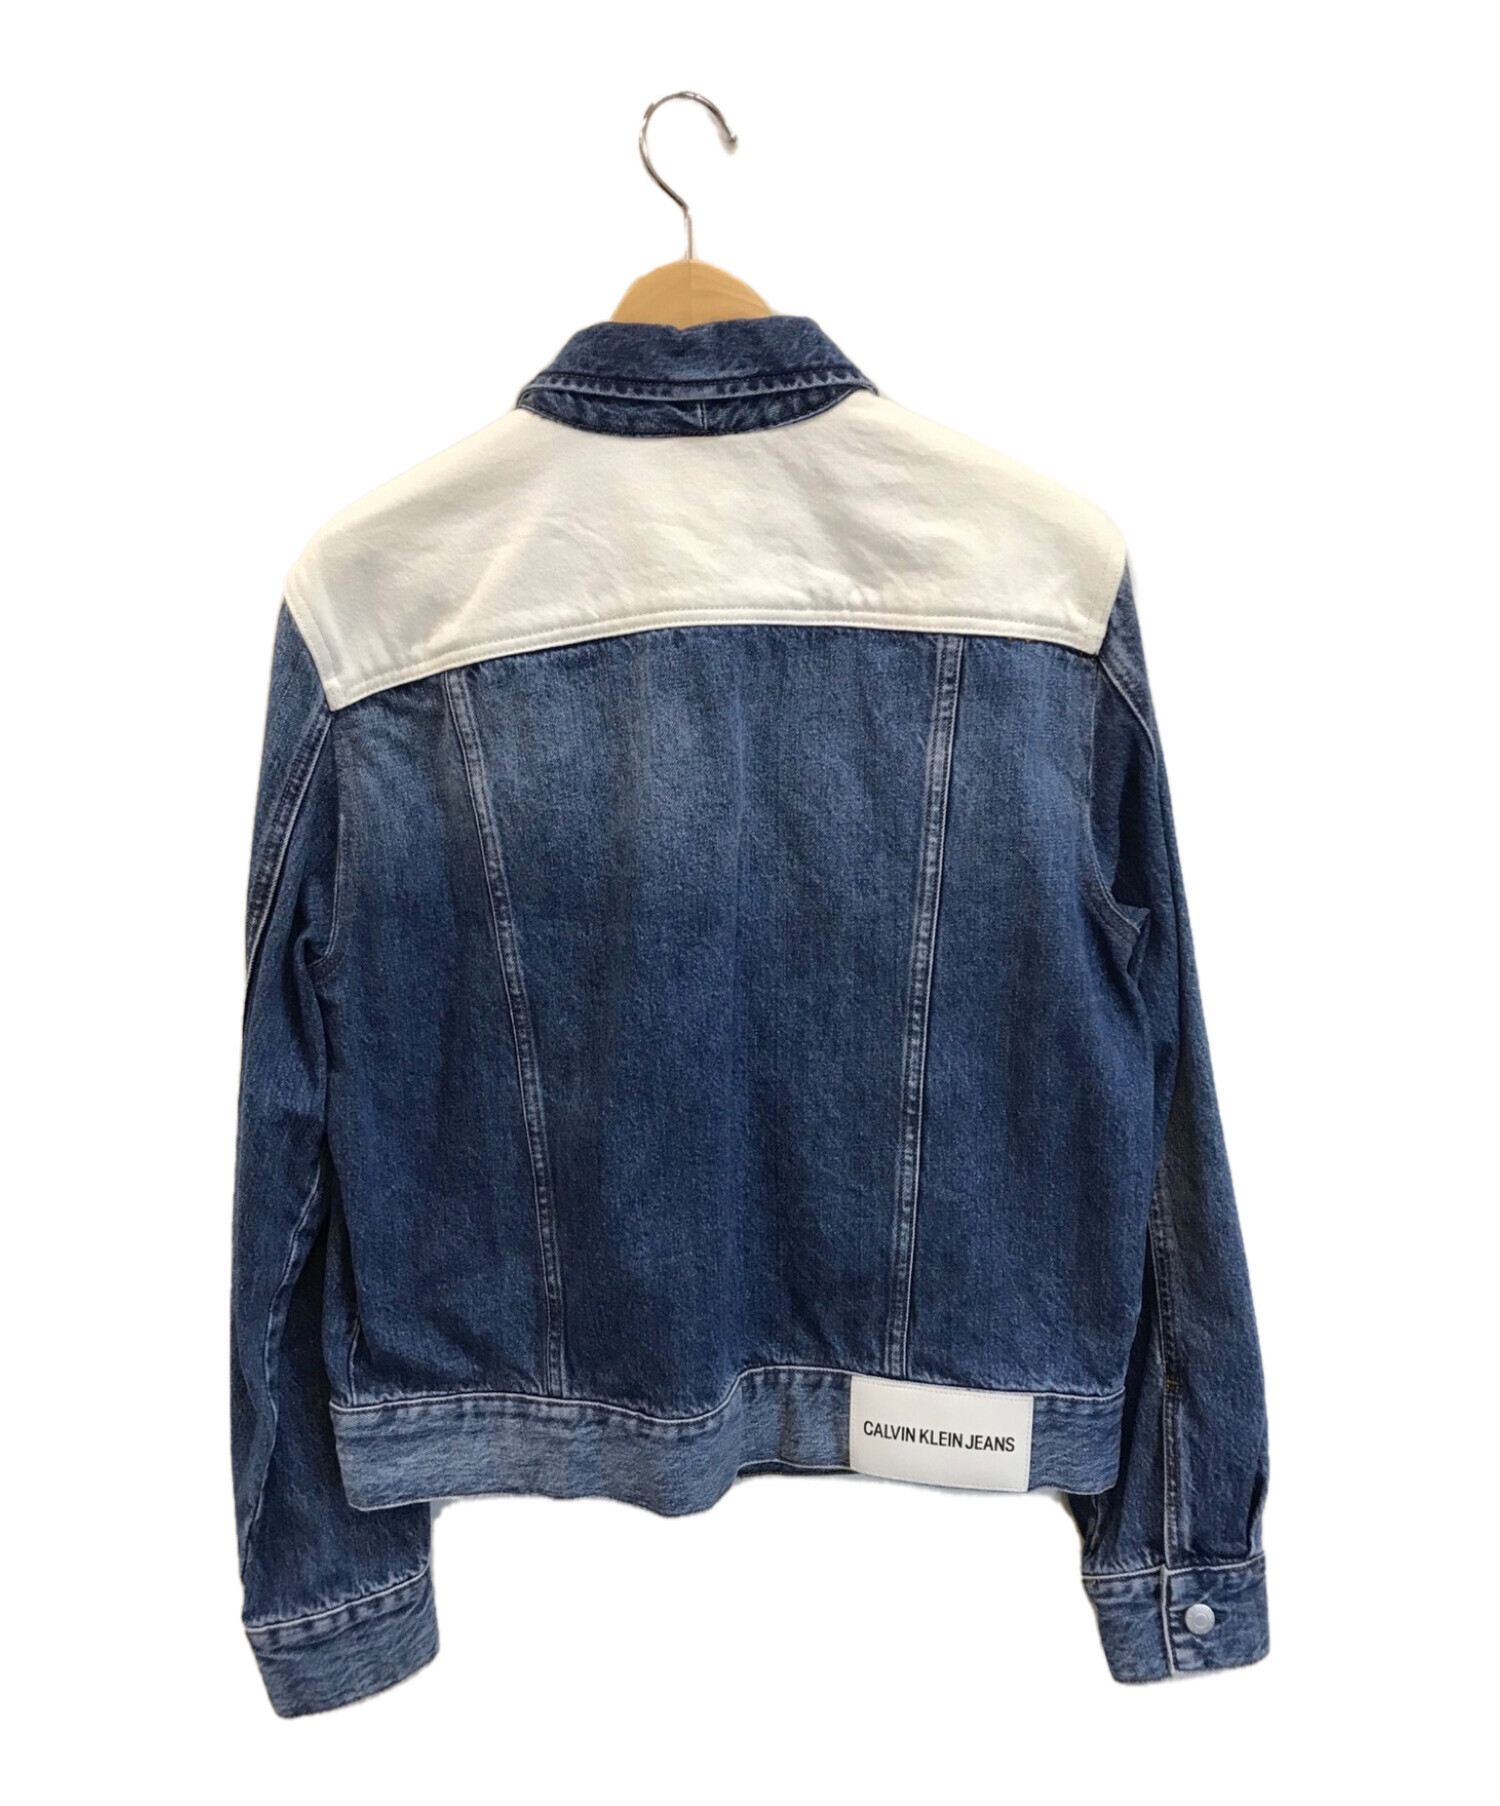 Calvin Klein Jeans (カルバンクラインジーンズ) クラシックトラッカーデニム ジャケット インディゴ×ホワイト サイズ:M